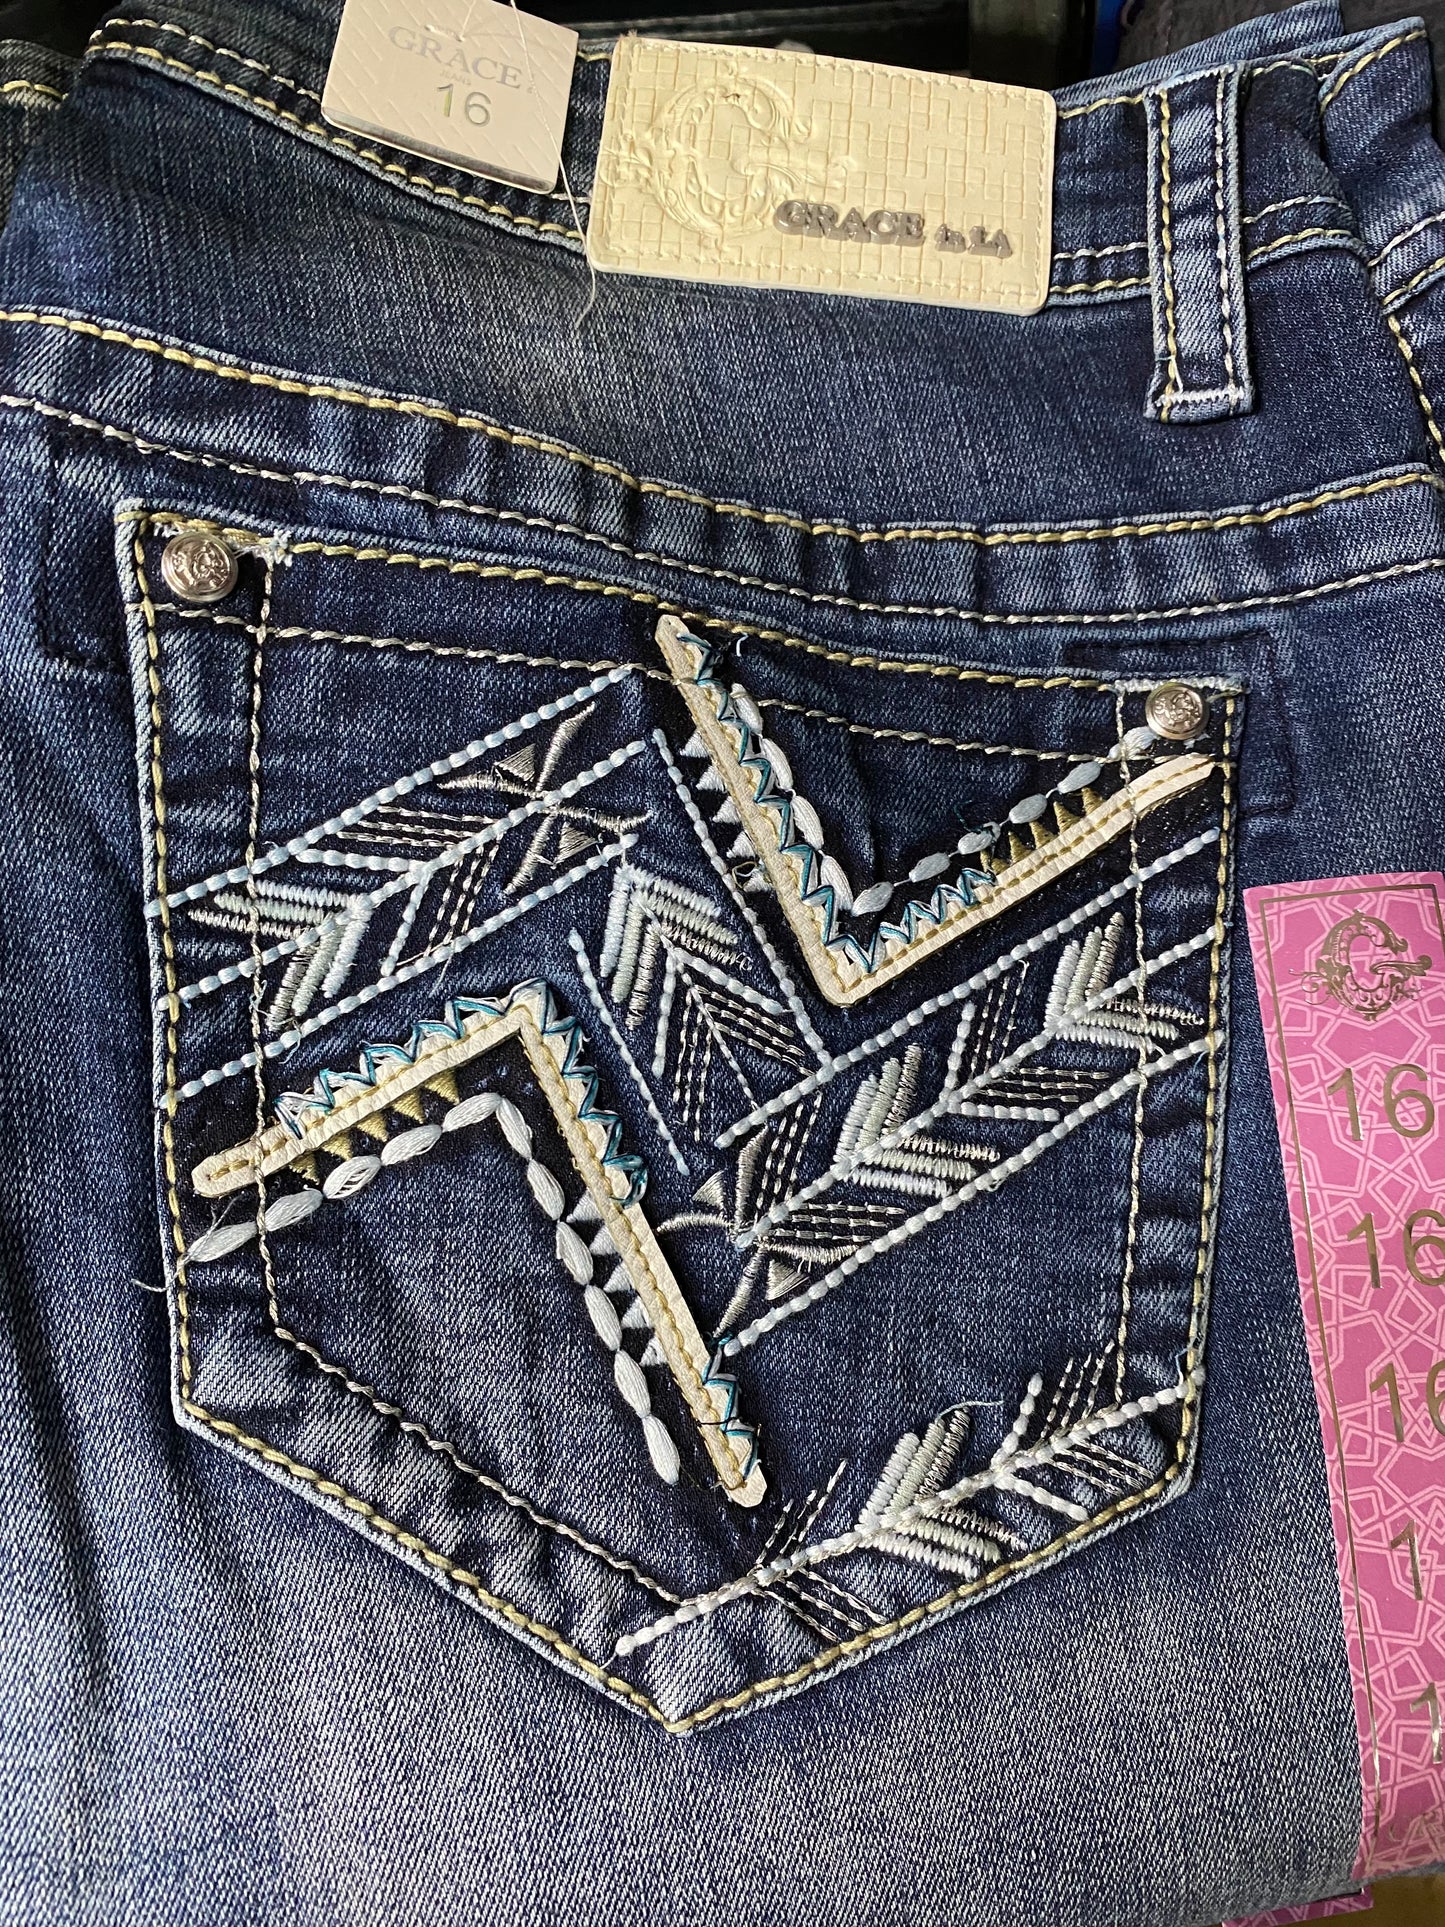 Grace in LA Ladies Plus Size Arrow Stitched Jeans - PB51688